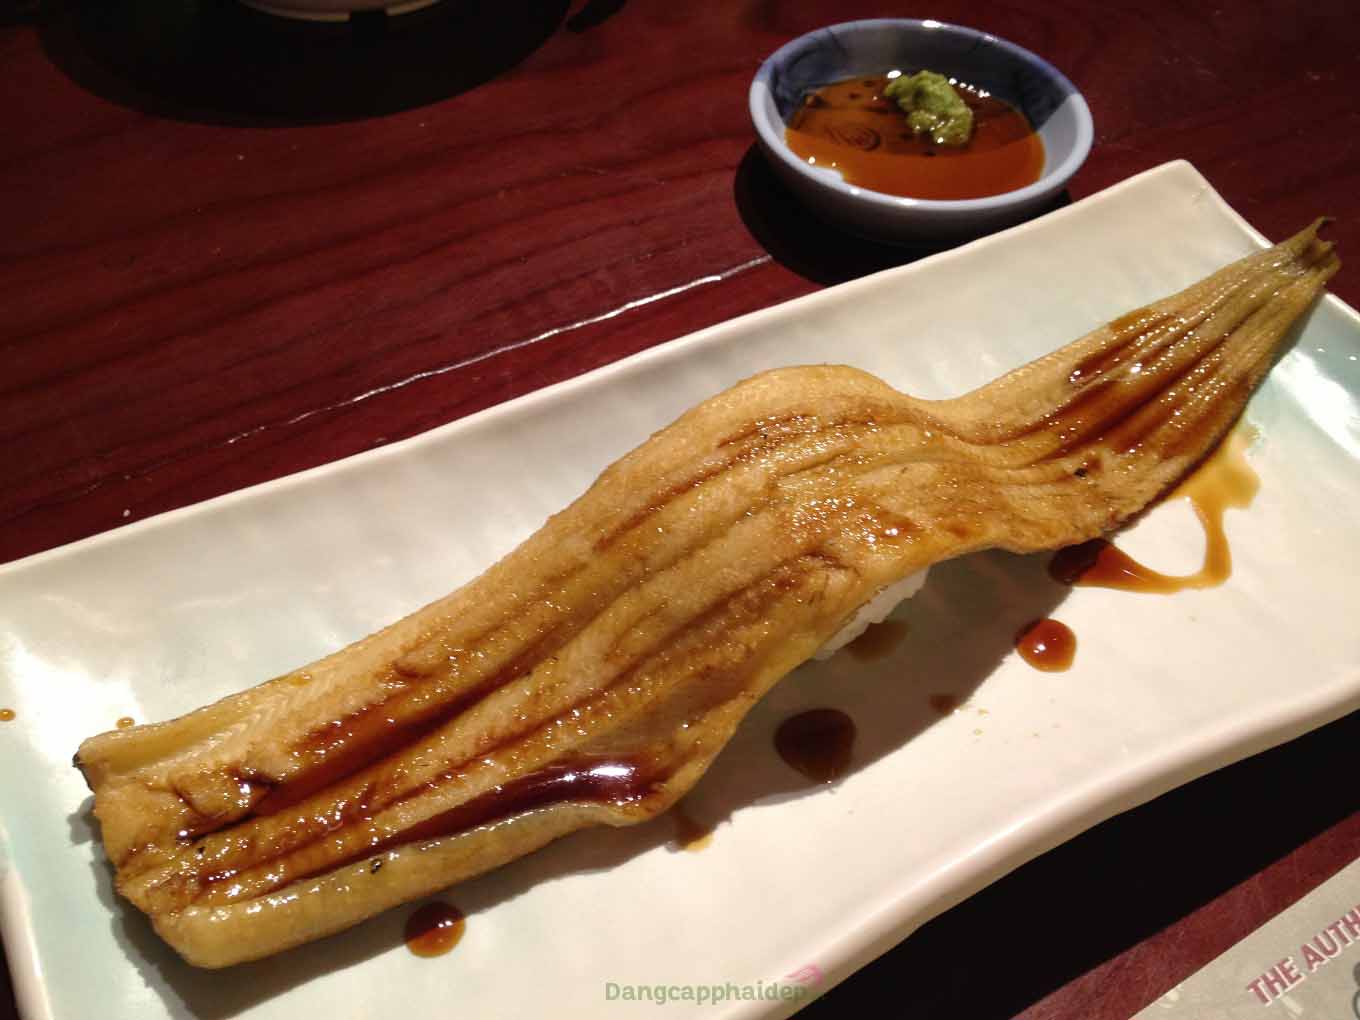 Lươn biển nướng là món ăn truyền thống vào mùa hè ở Nhật